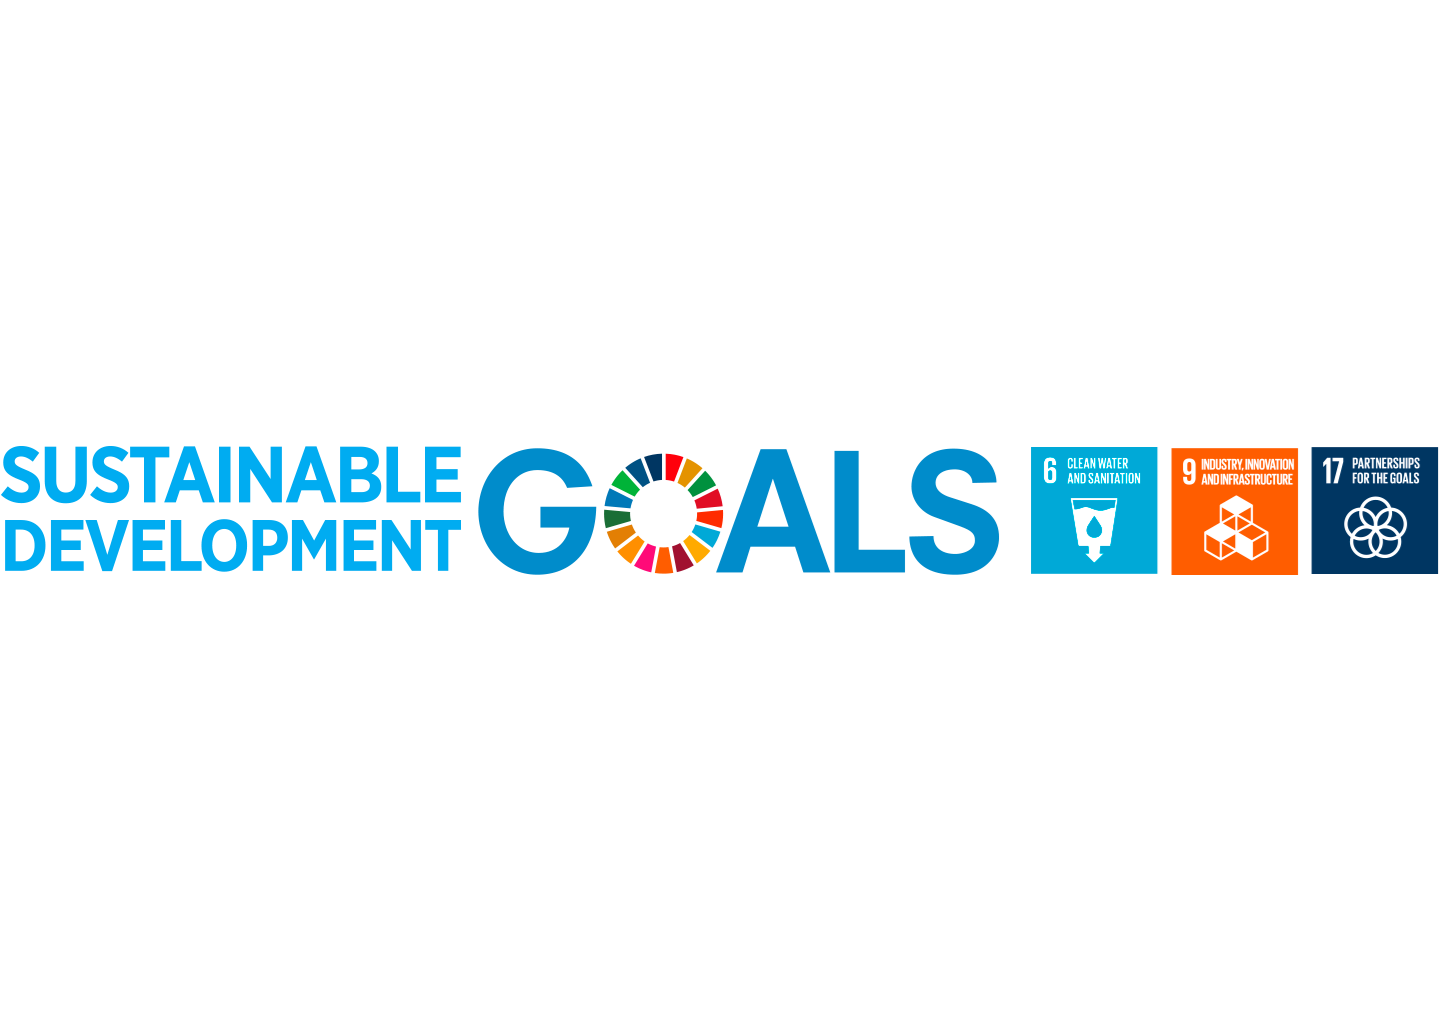 UN goals 6 - 9 - 17